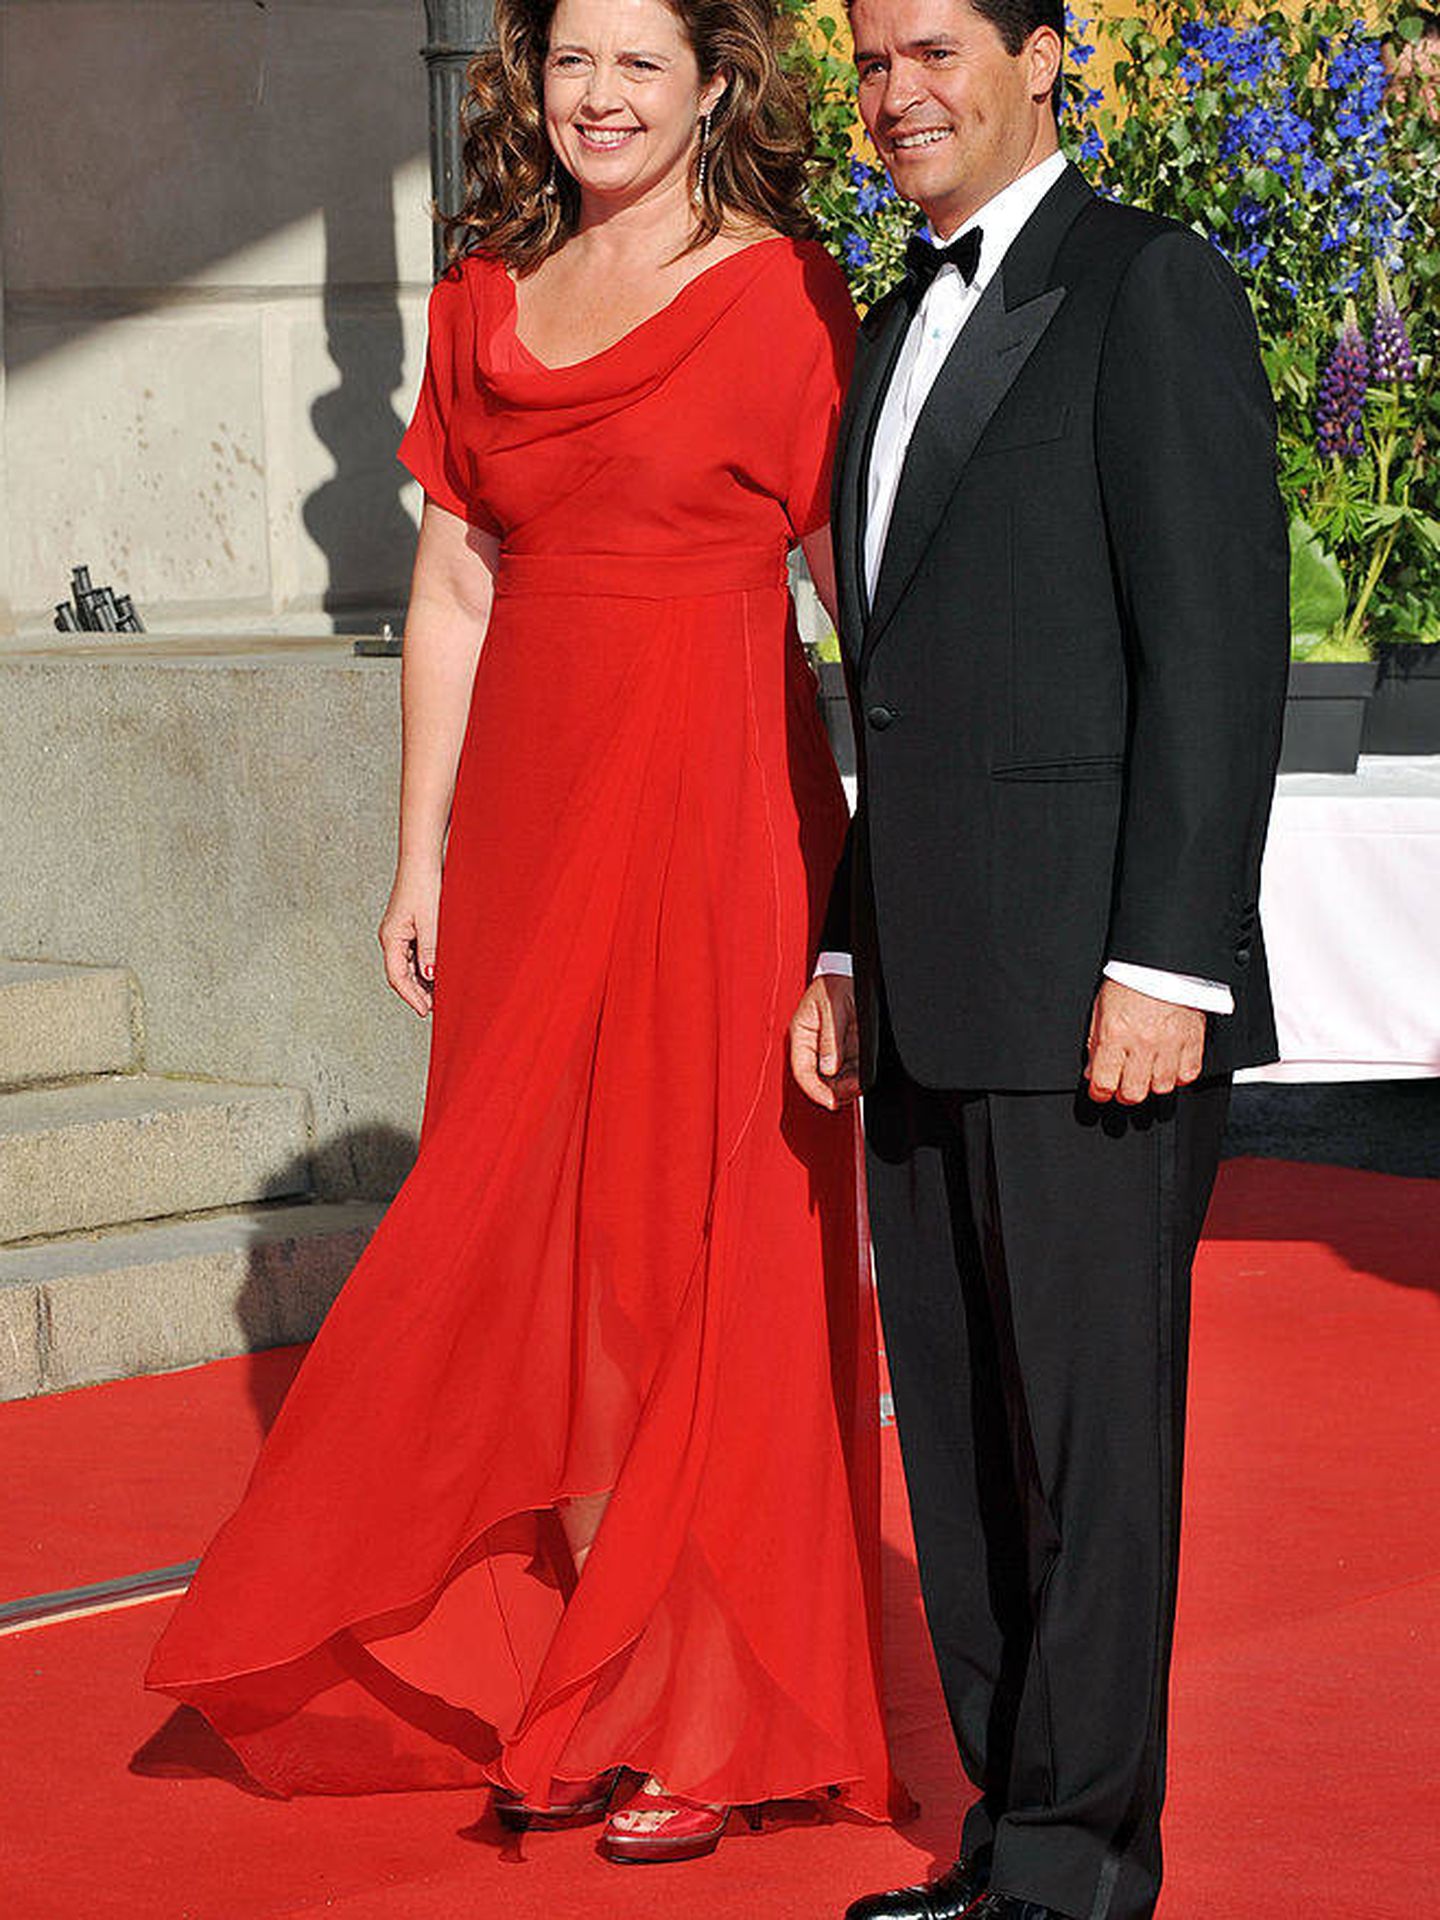 En 2010, en Estocolmo, en la boda de Victoria de Suecia. (Getty)